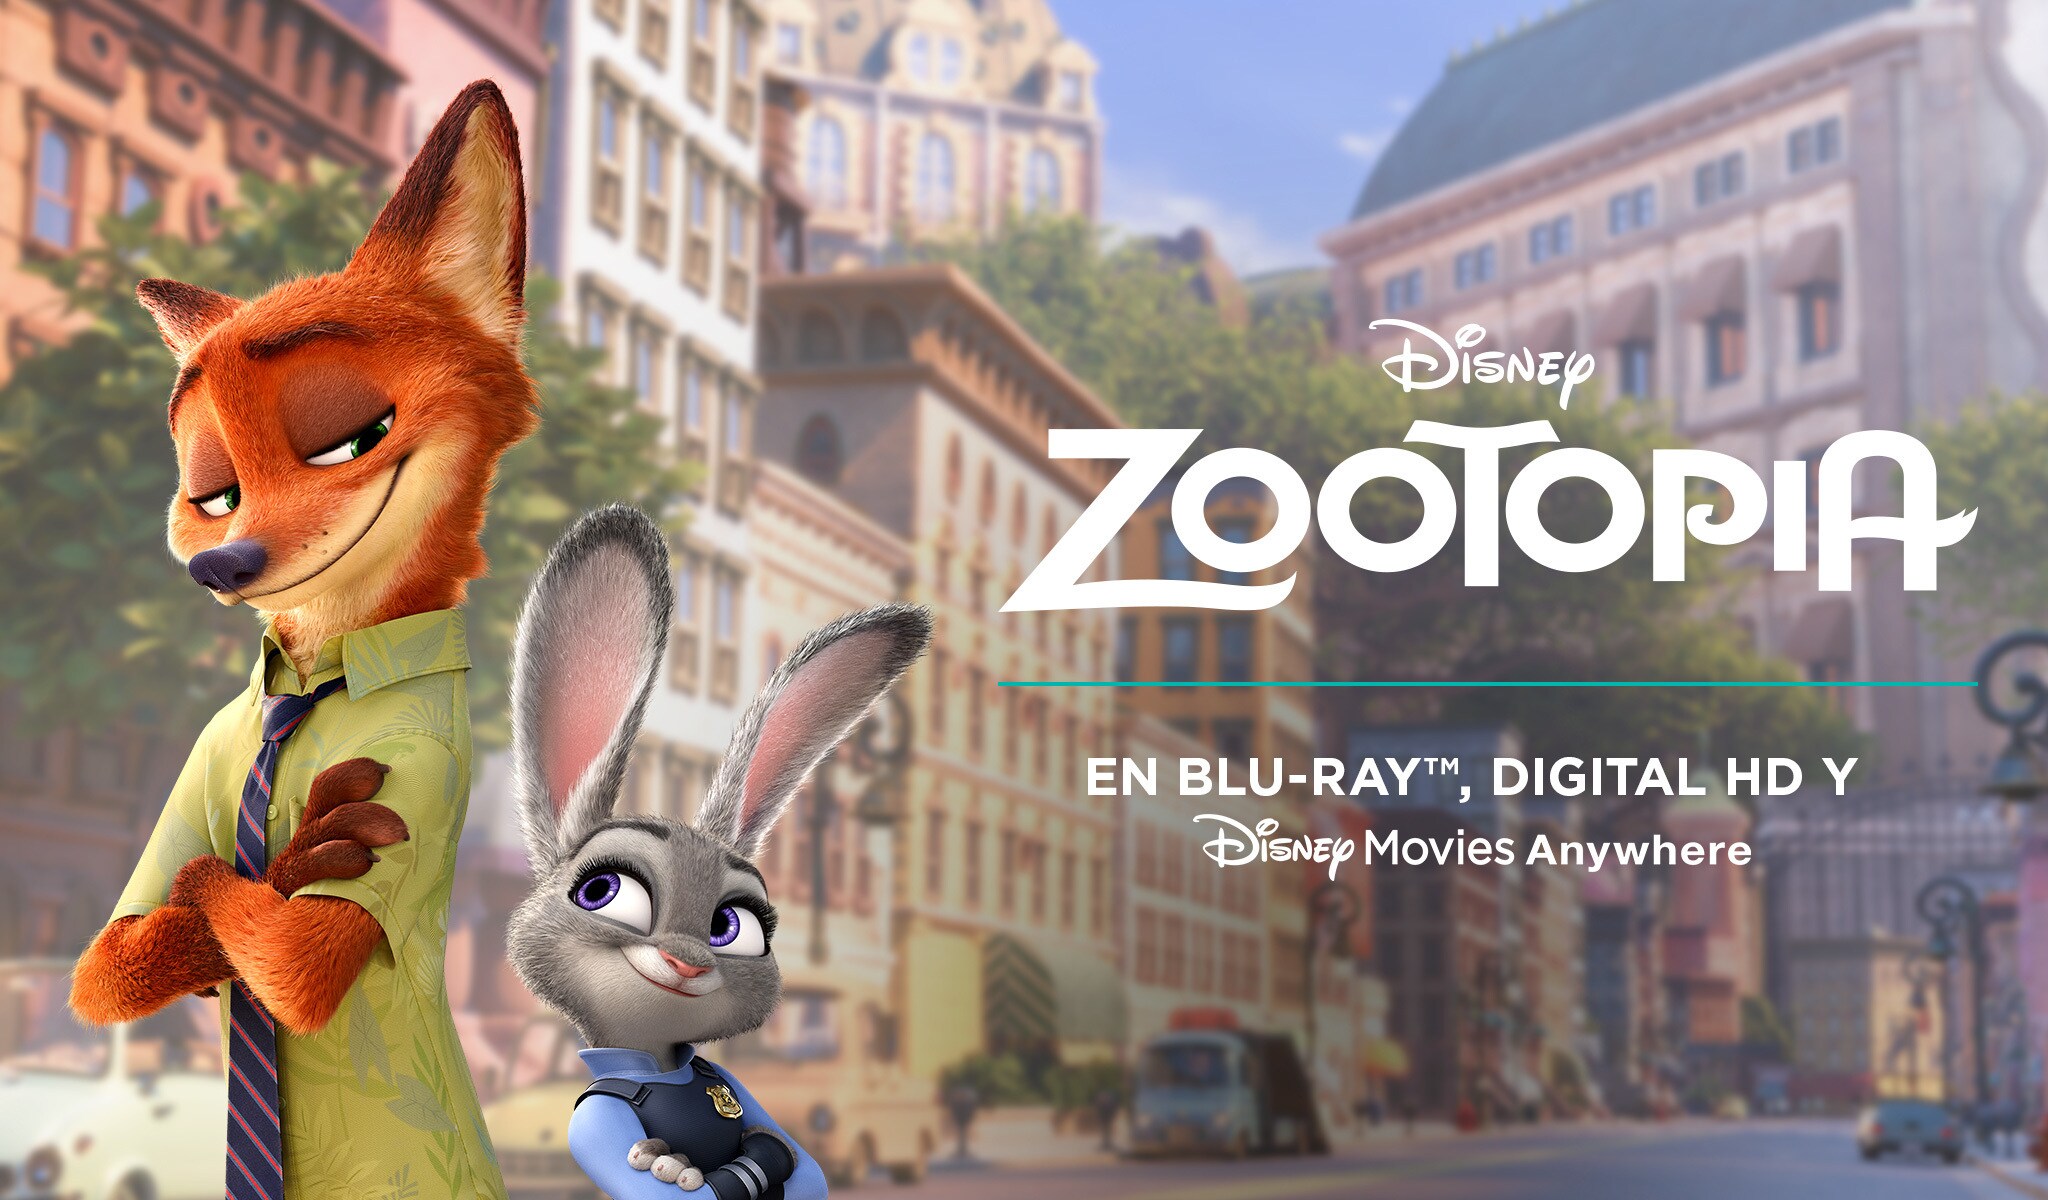 Zootopia En Blu-ray™, Digital HD y Disney Movies Anywhere el 7 de junio